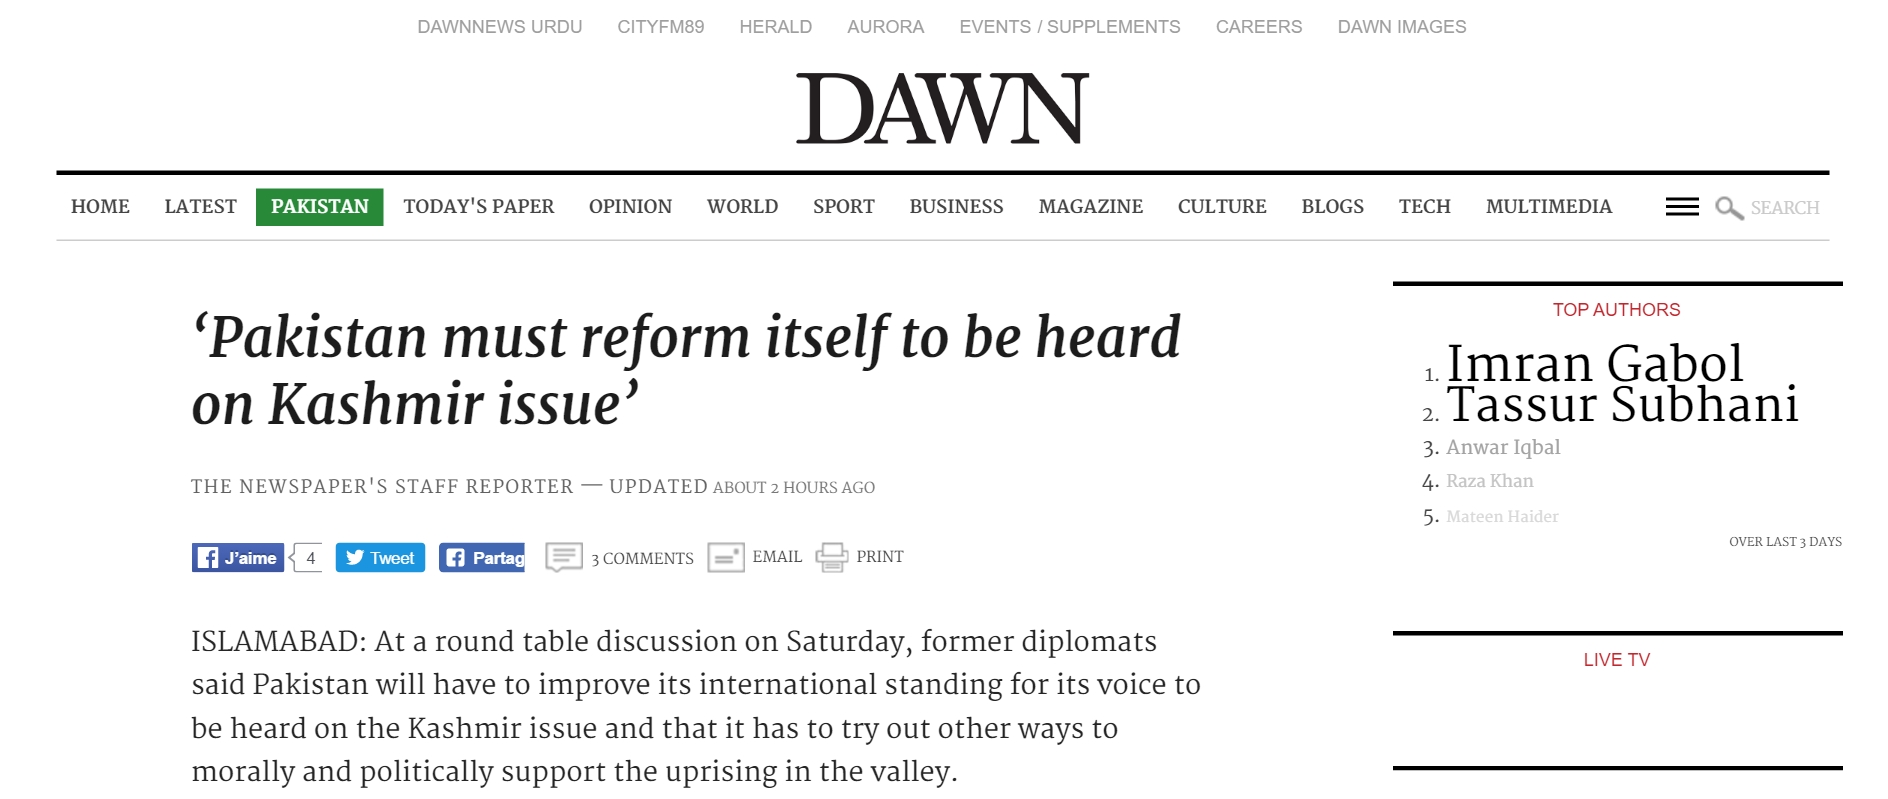 Comment faire entendre la voix du Pakistan sur le dossier cachemiri ? Copie d'écran de Dawn, le 18 juillet 2016.